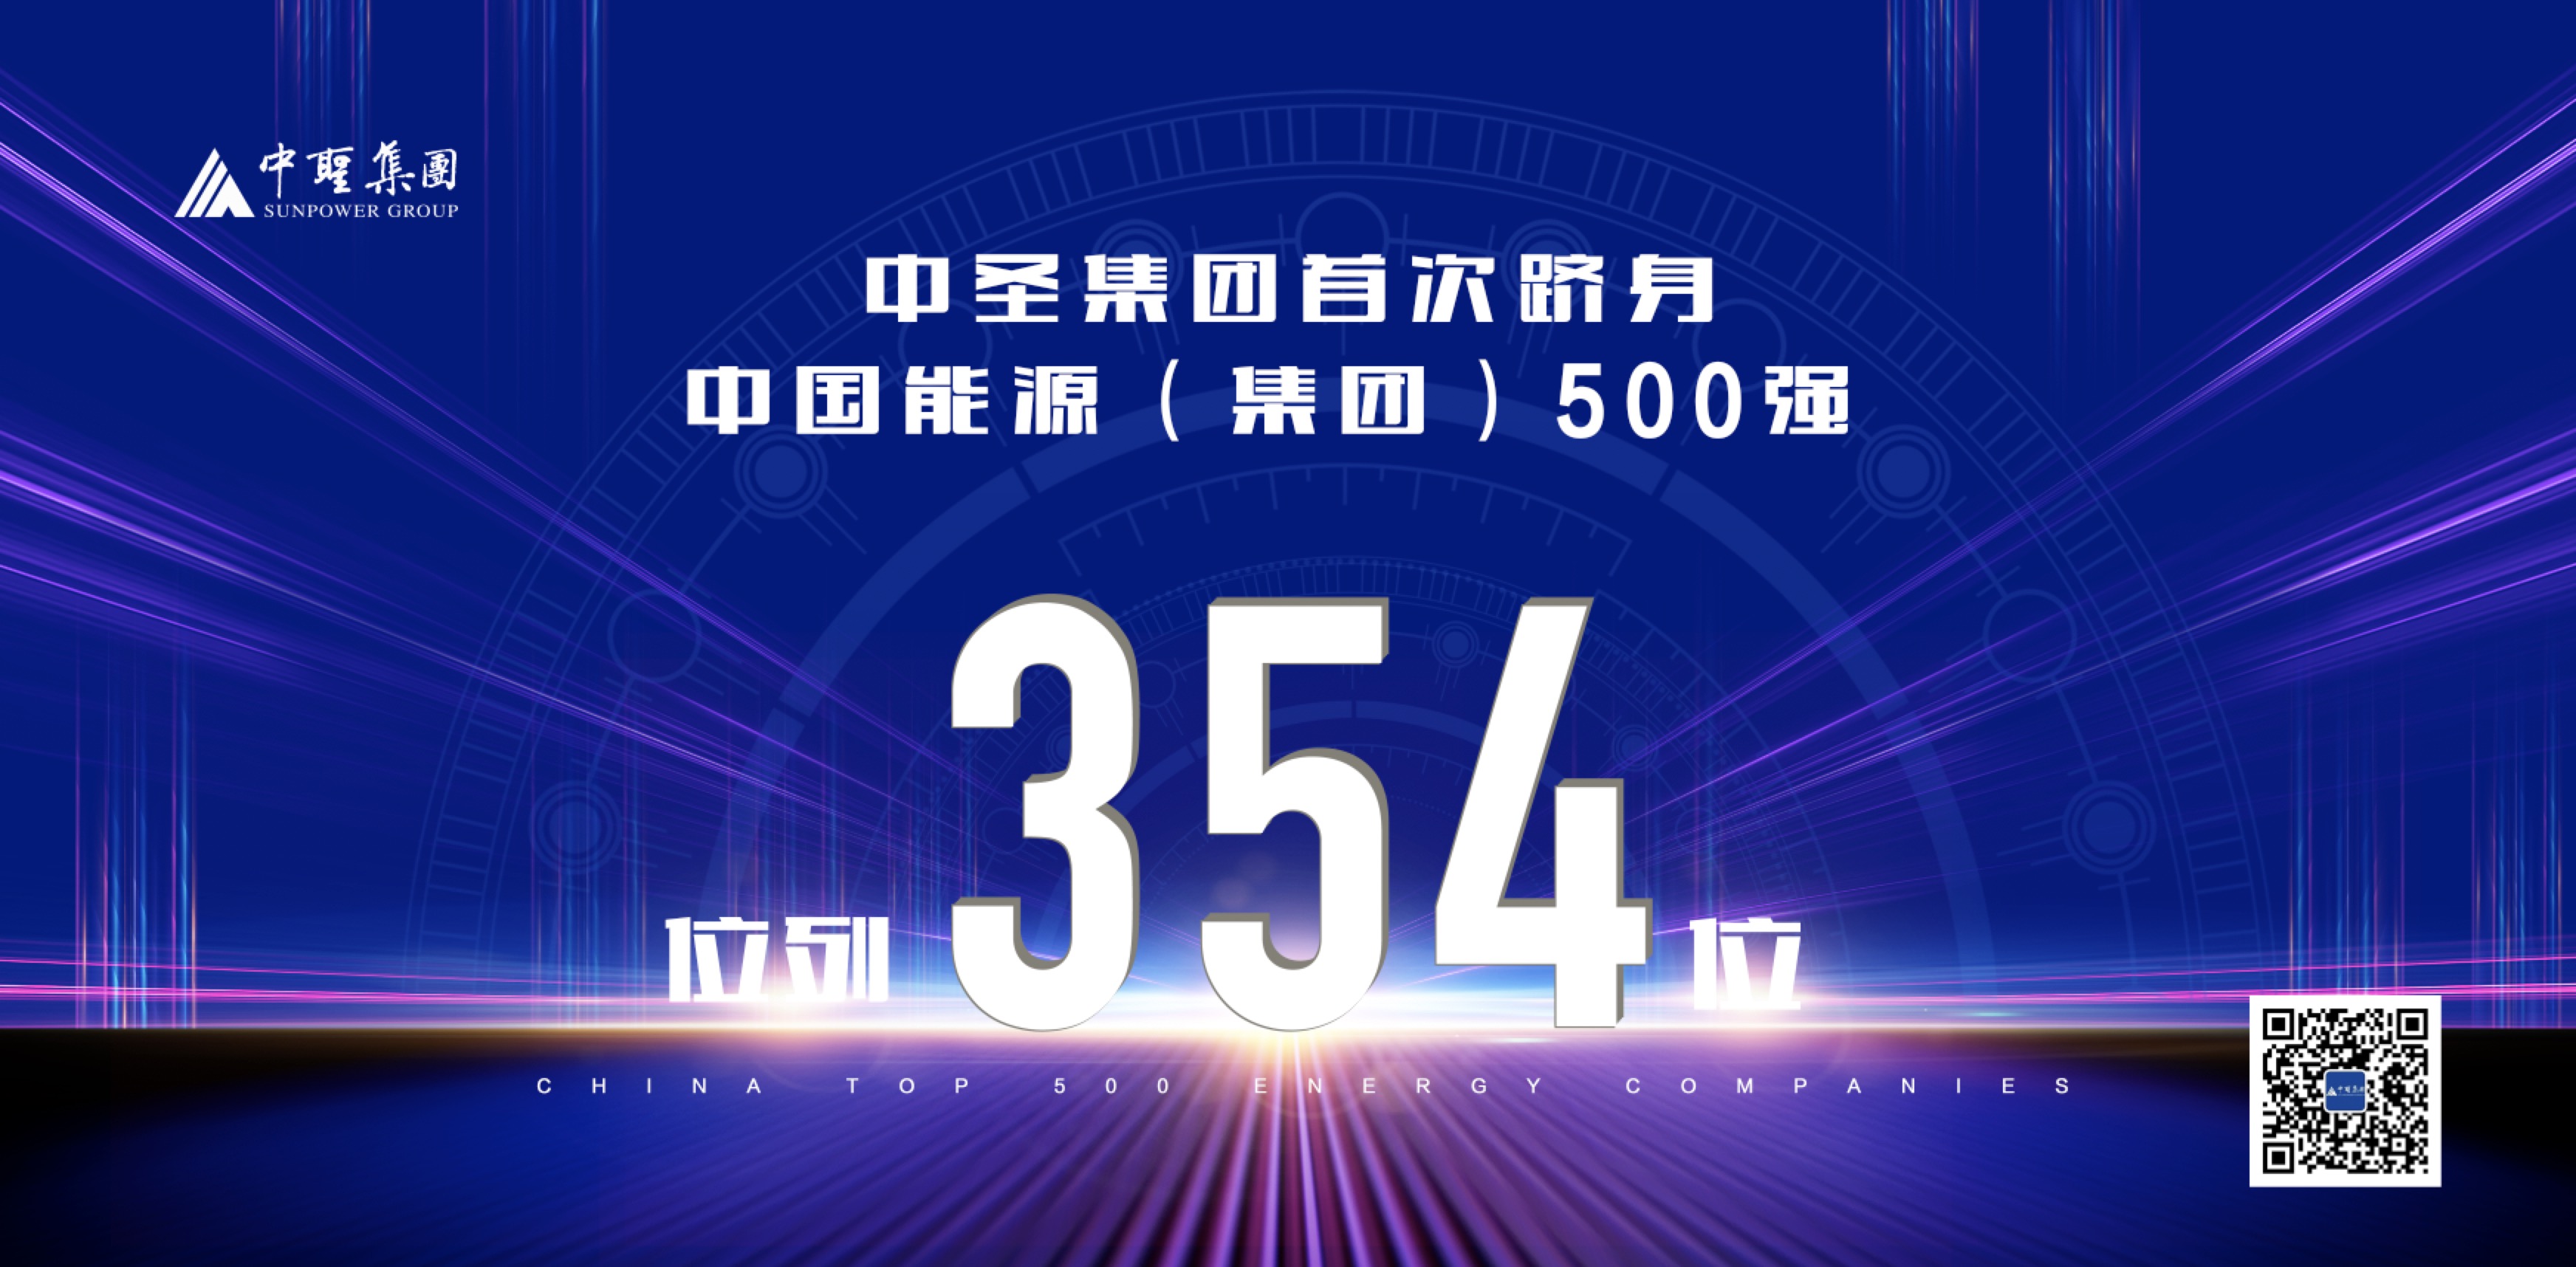 2019年12月15日，中圣集团首次跻身“中国能源（集团）500强榜单”，位列354位。